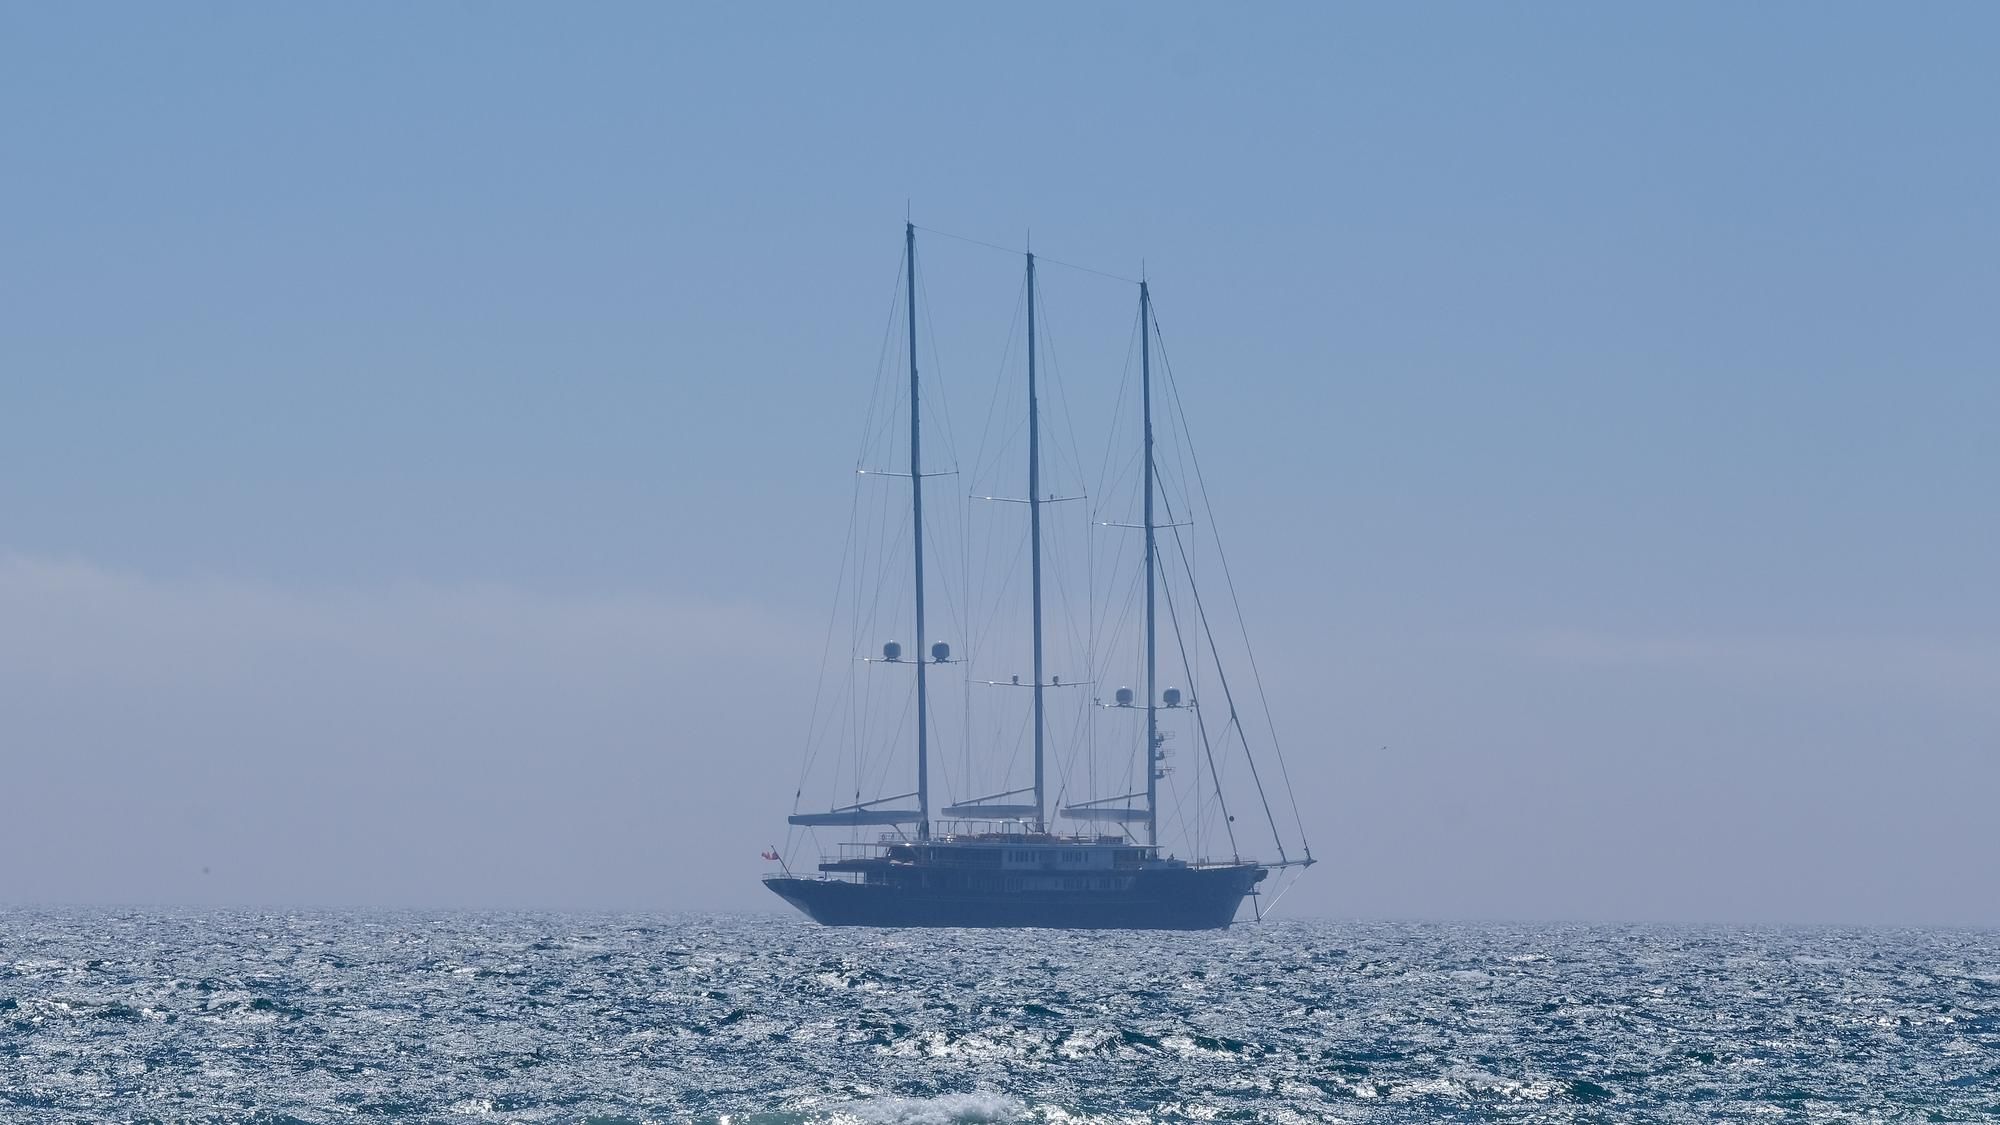 Die Gigayacht "Koru" von Jeff Bezos liegt in der Bucht von Palma de Mallorca